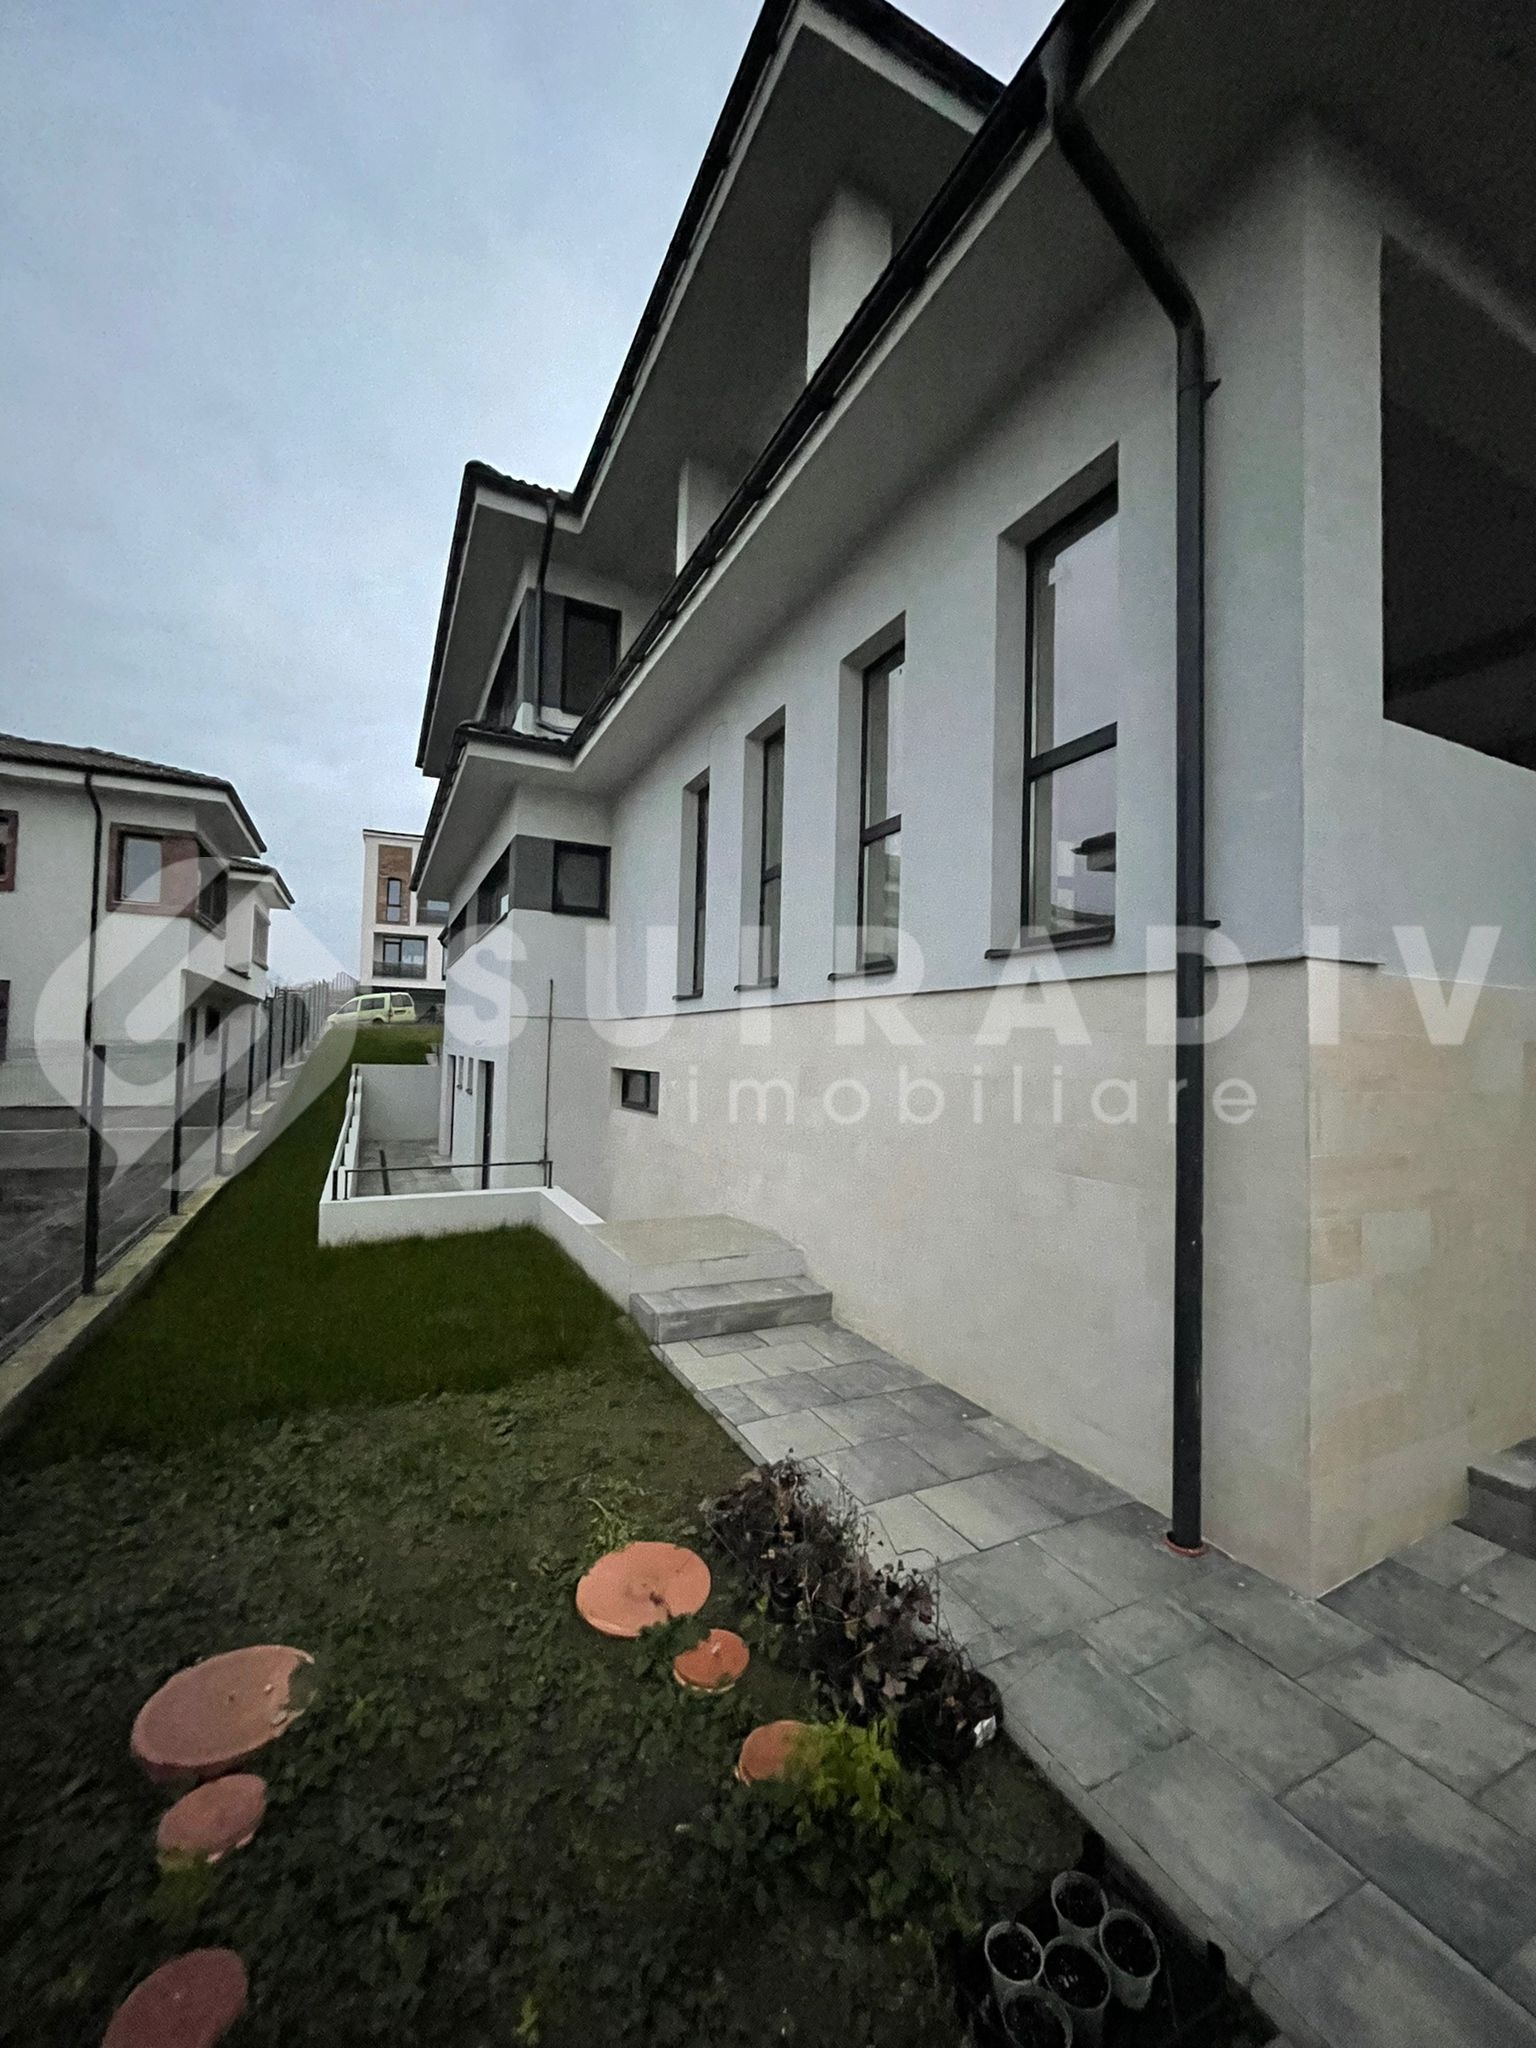 Duplex de vânzare în zona Borhanci, Cluj-Napoca S15237